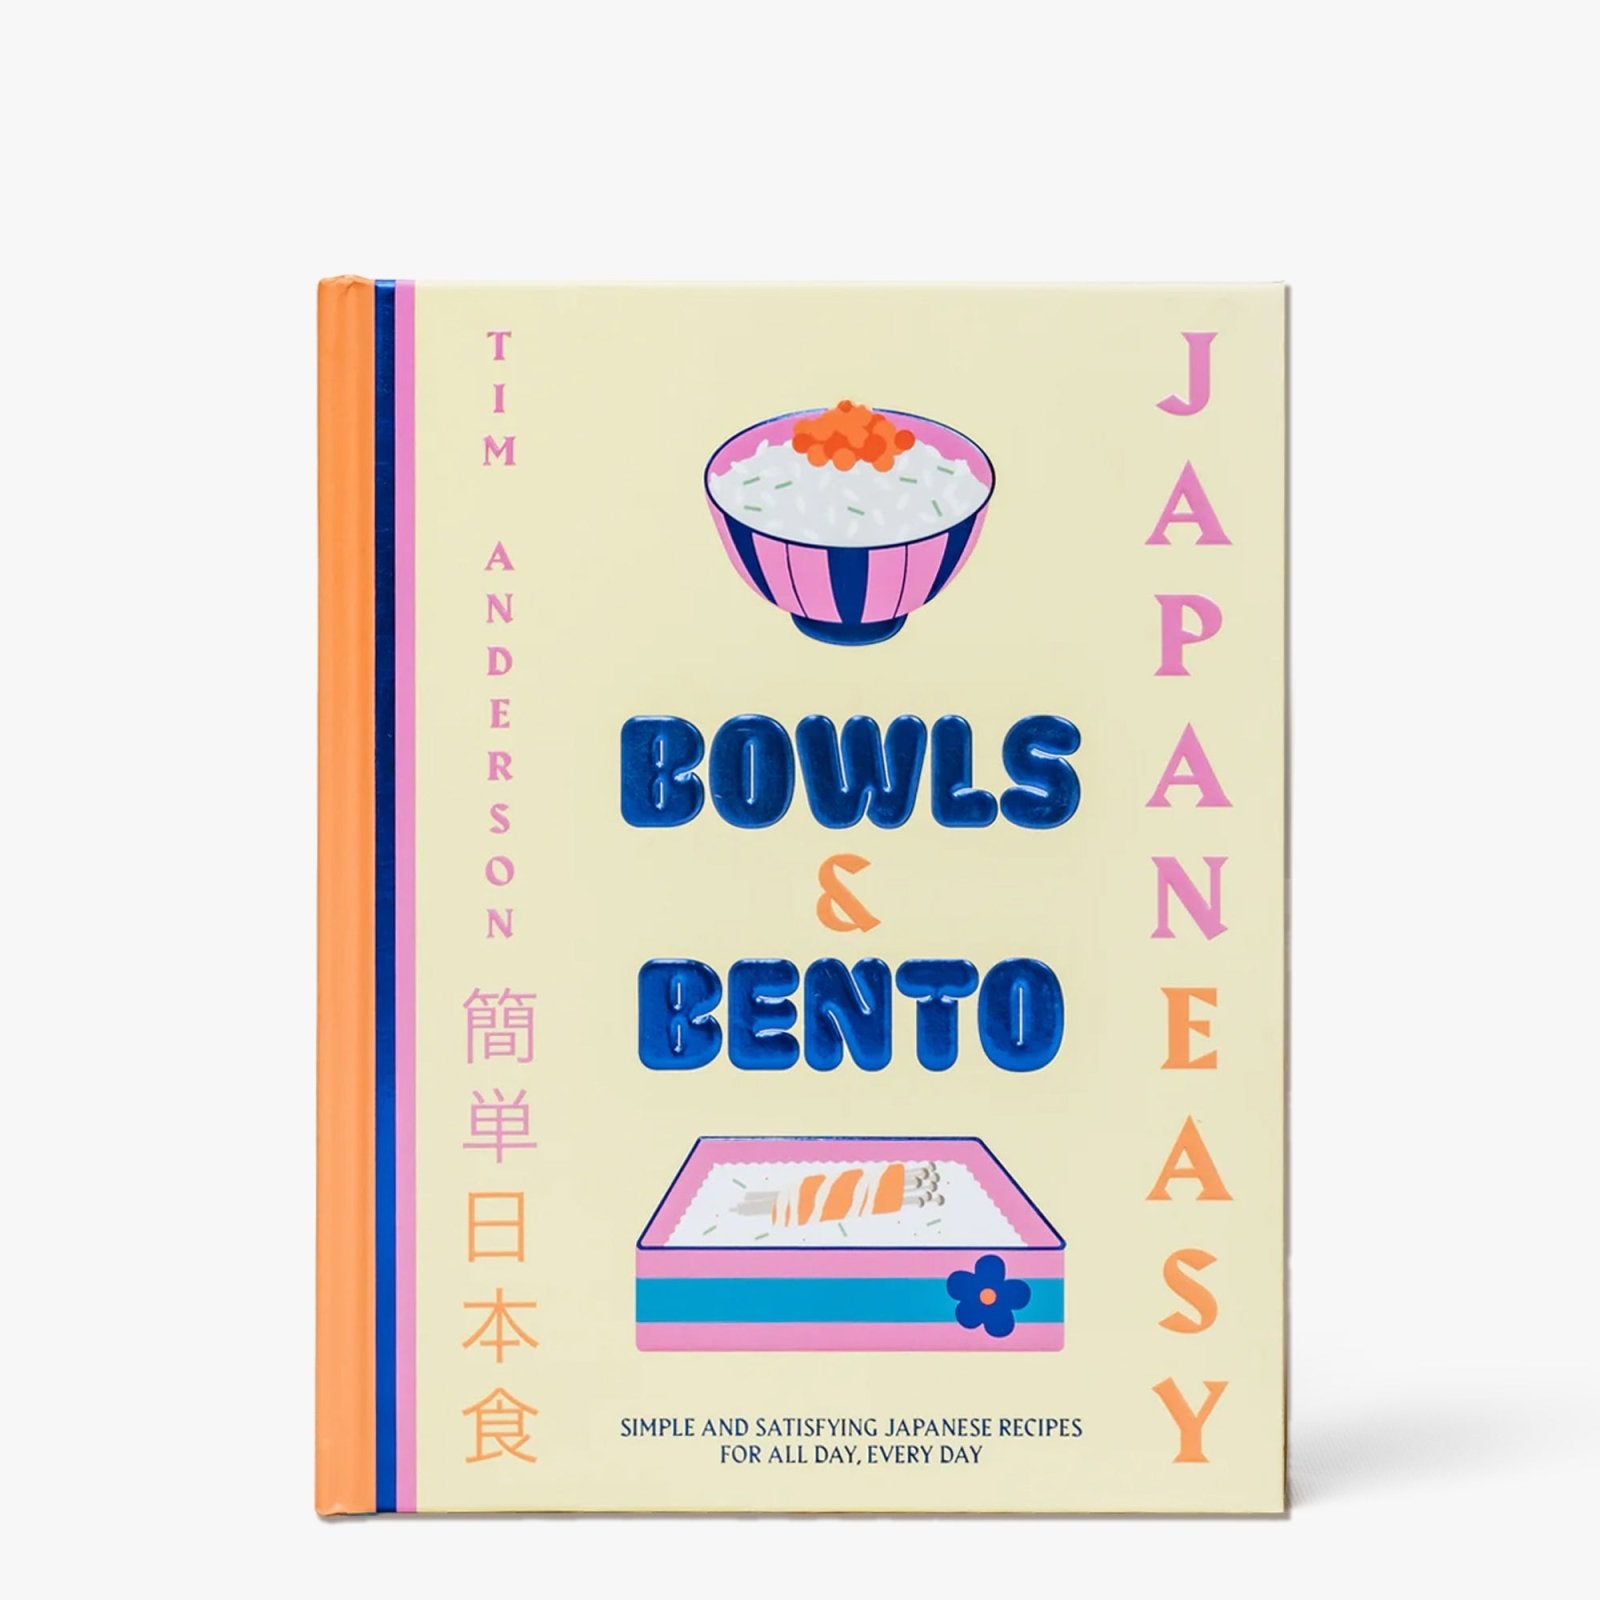 Bowls & Bento. Des recettes japonaises simples et délicieuses pour tous les jours - Hachette Pratique - iRASSHAi